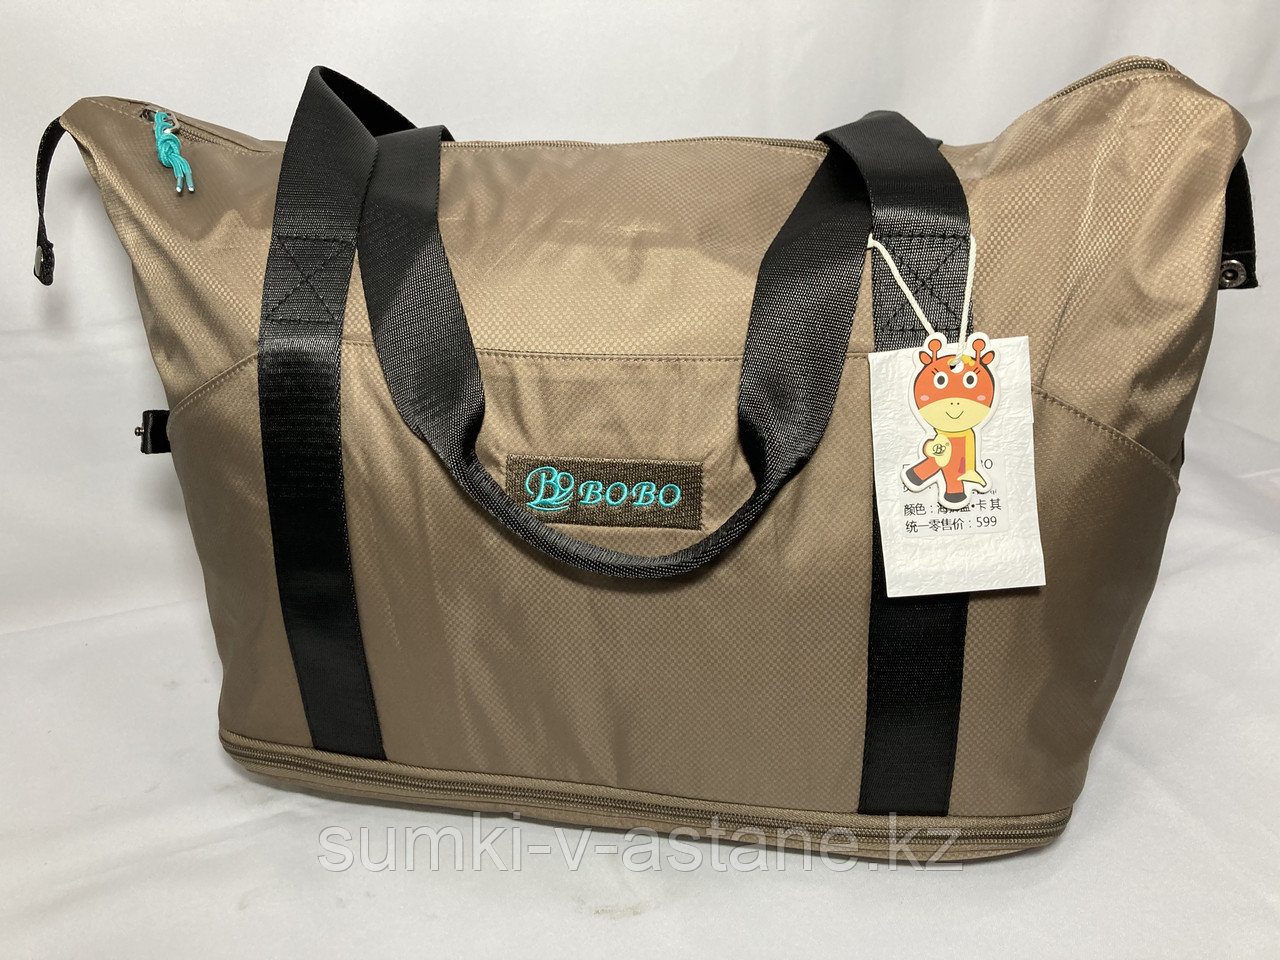 Женская дорожно-спортивная сумка "BOB)"(Высота 28 см, ширина 42 см, глубина 22 см)